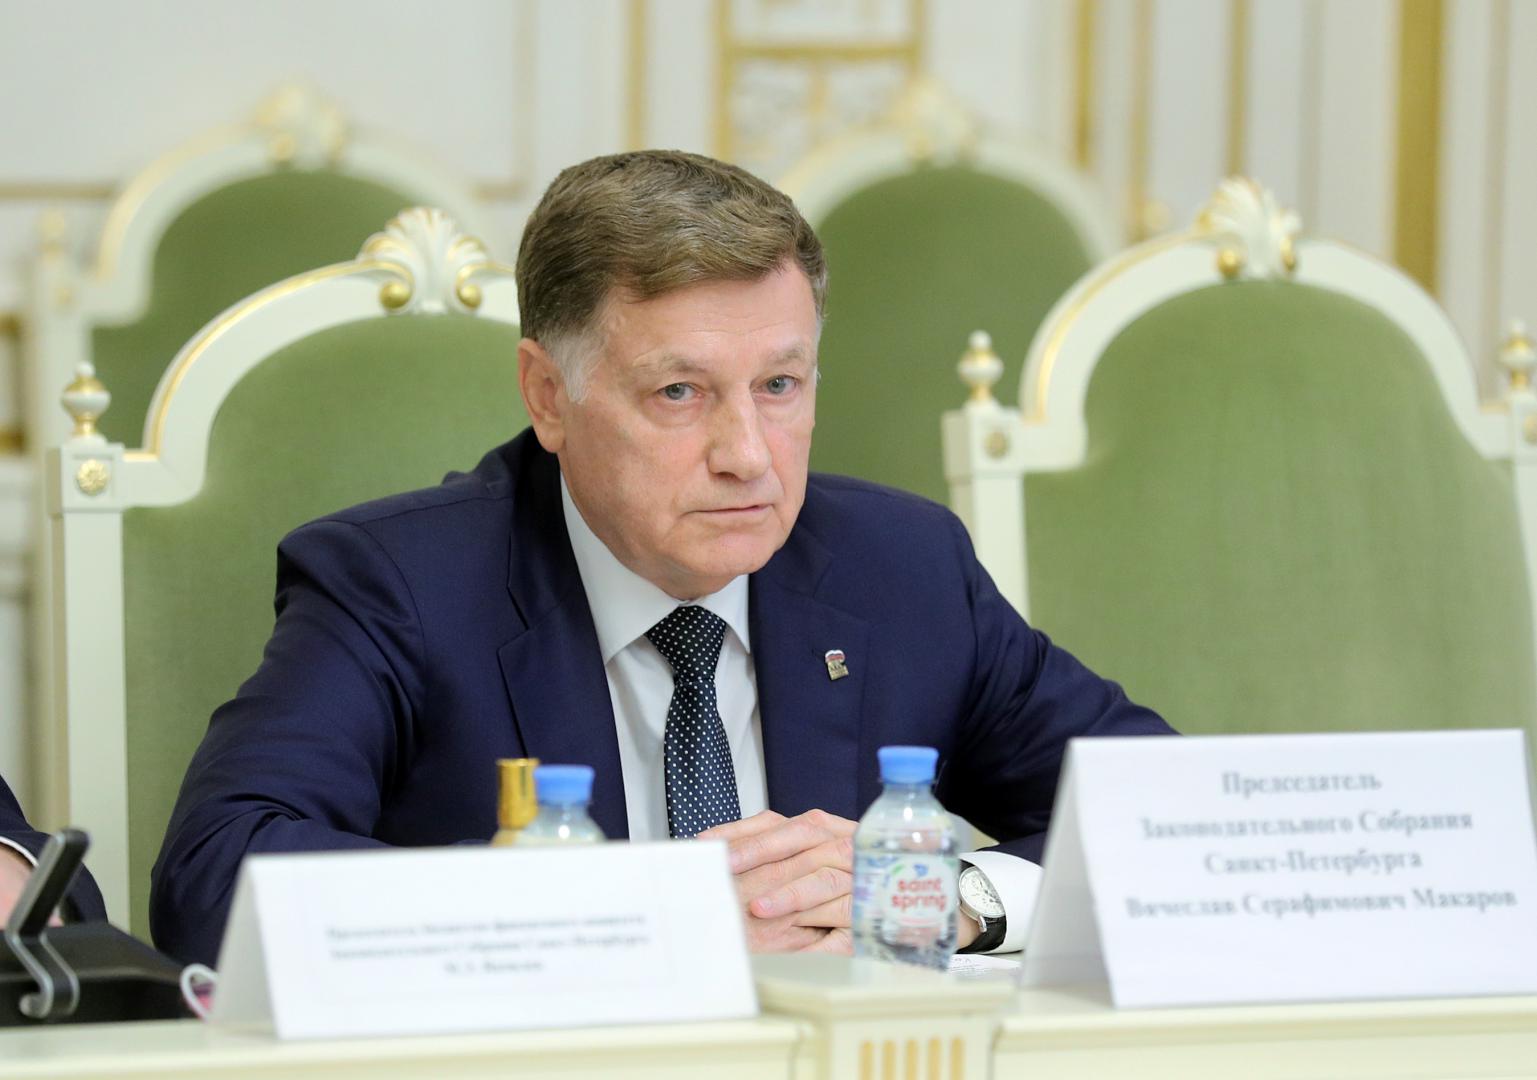 Контрольно-счетная палата  Санкт-Петербурга принимает участие в «нулевых чтениях» законопроекта о бюджете на 2021 год